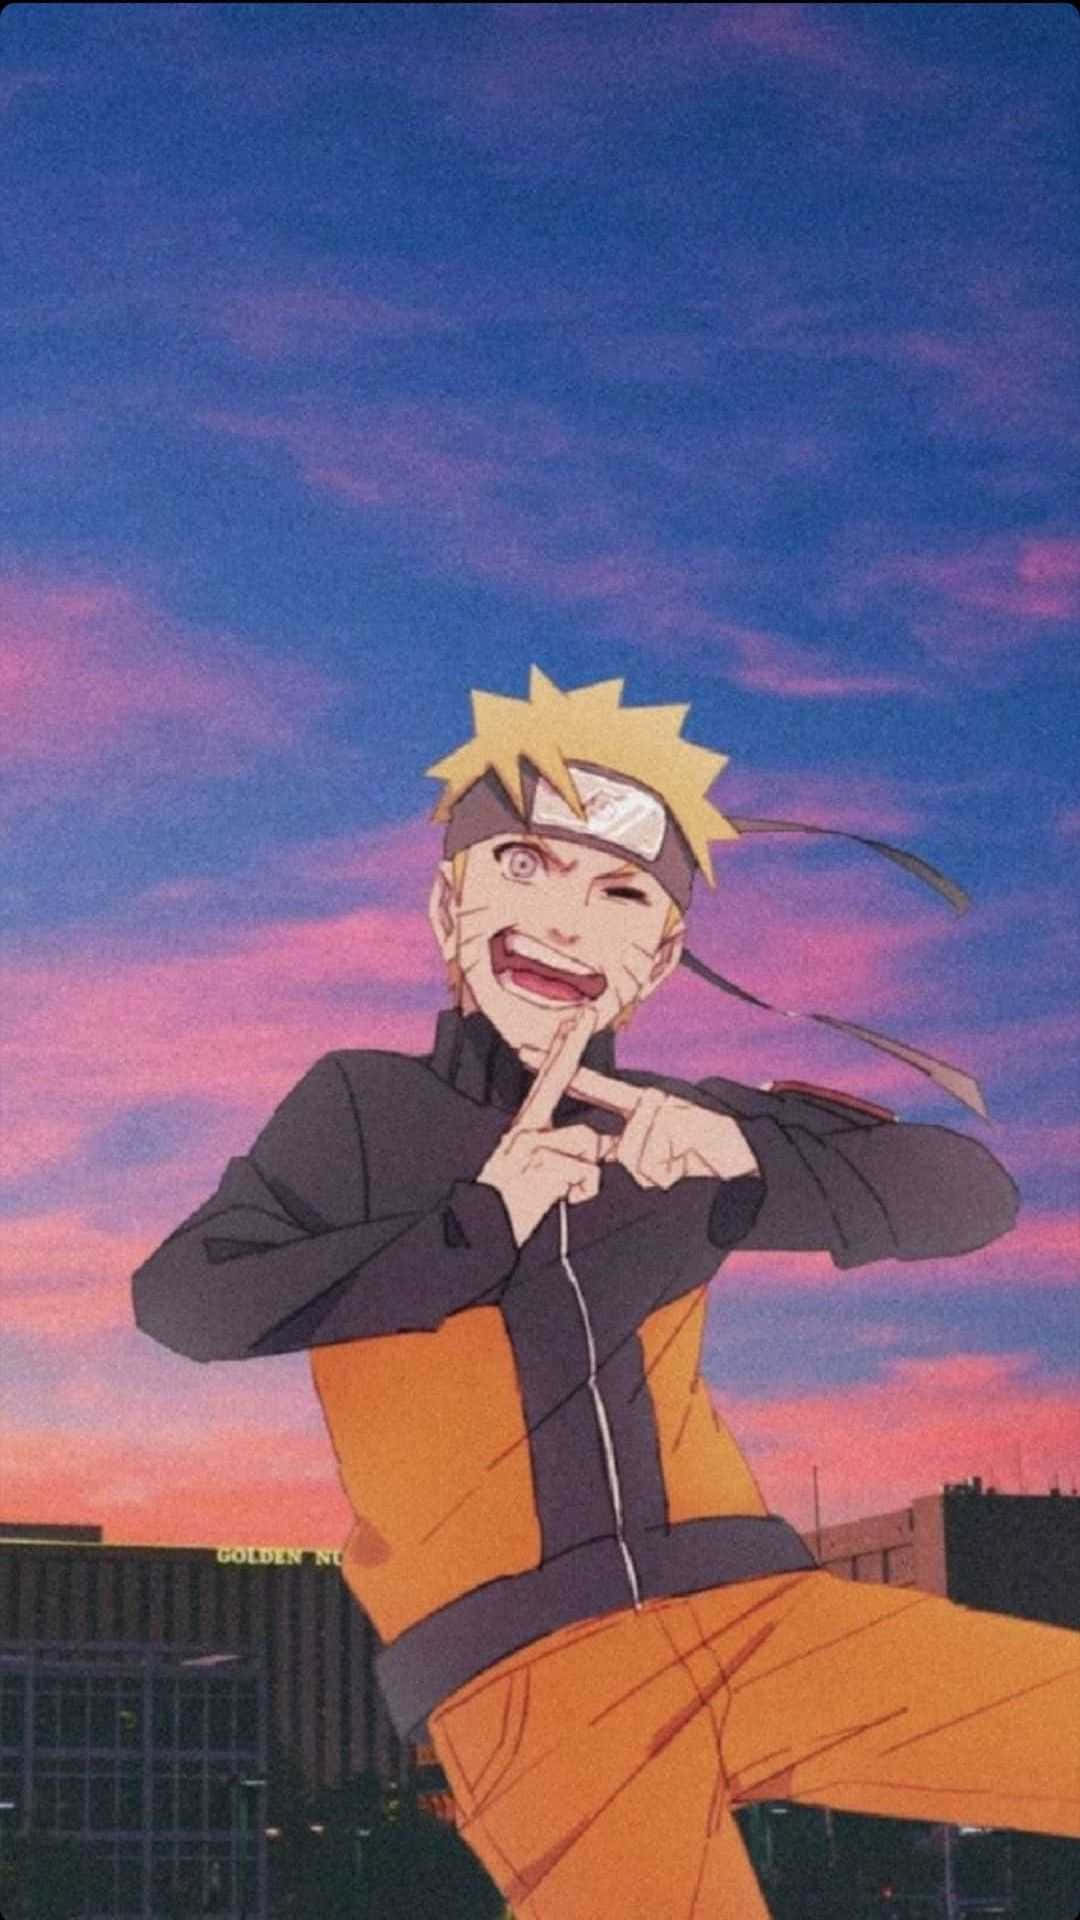 Narutohintergrundbilder, Naruto Hintergrundbilder, Naruto Hintergrundbilder, Naruto Hintergrundbilder.